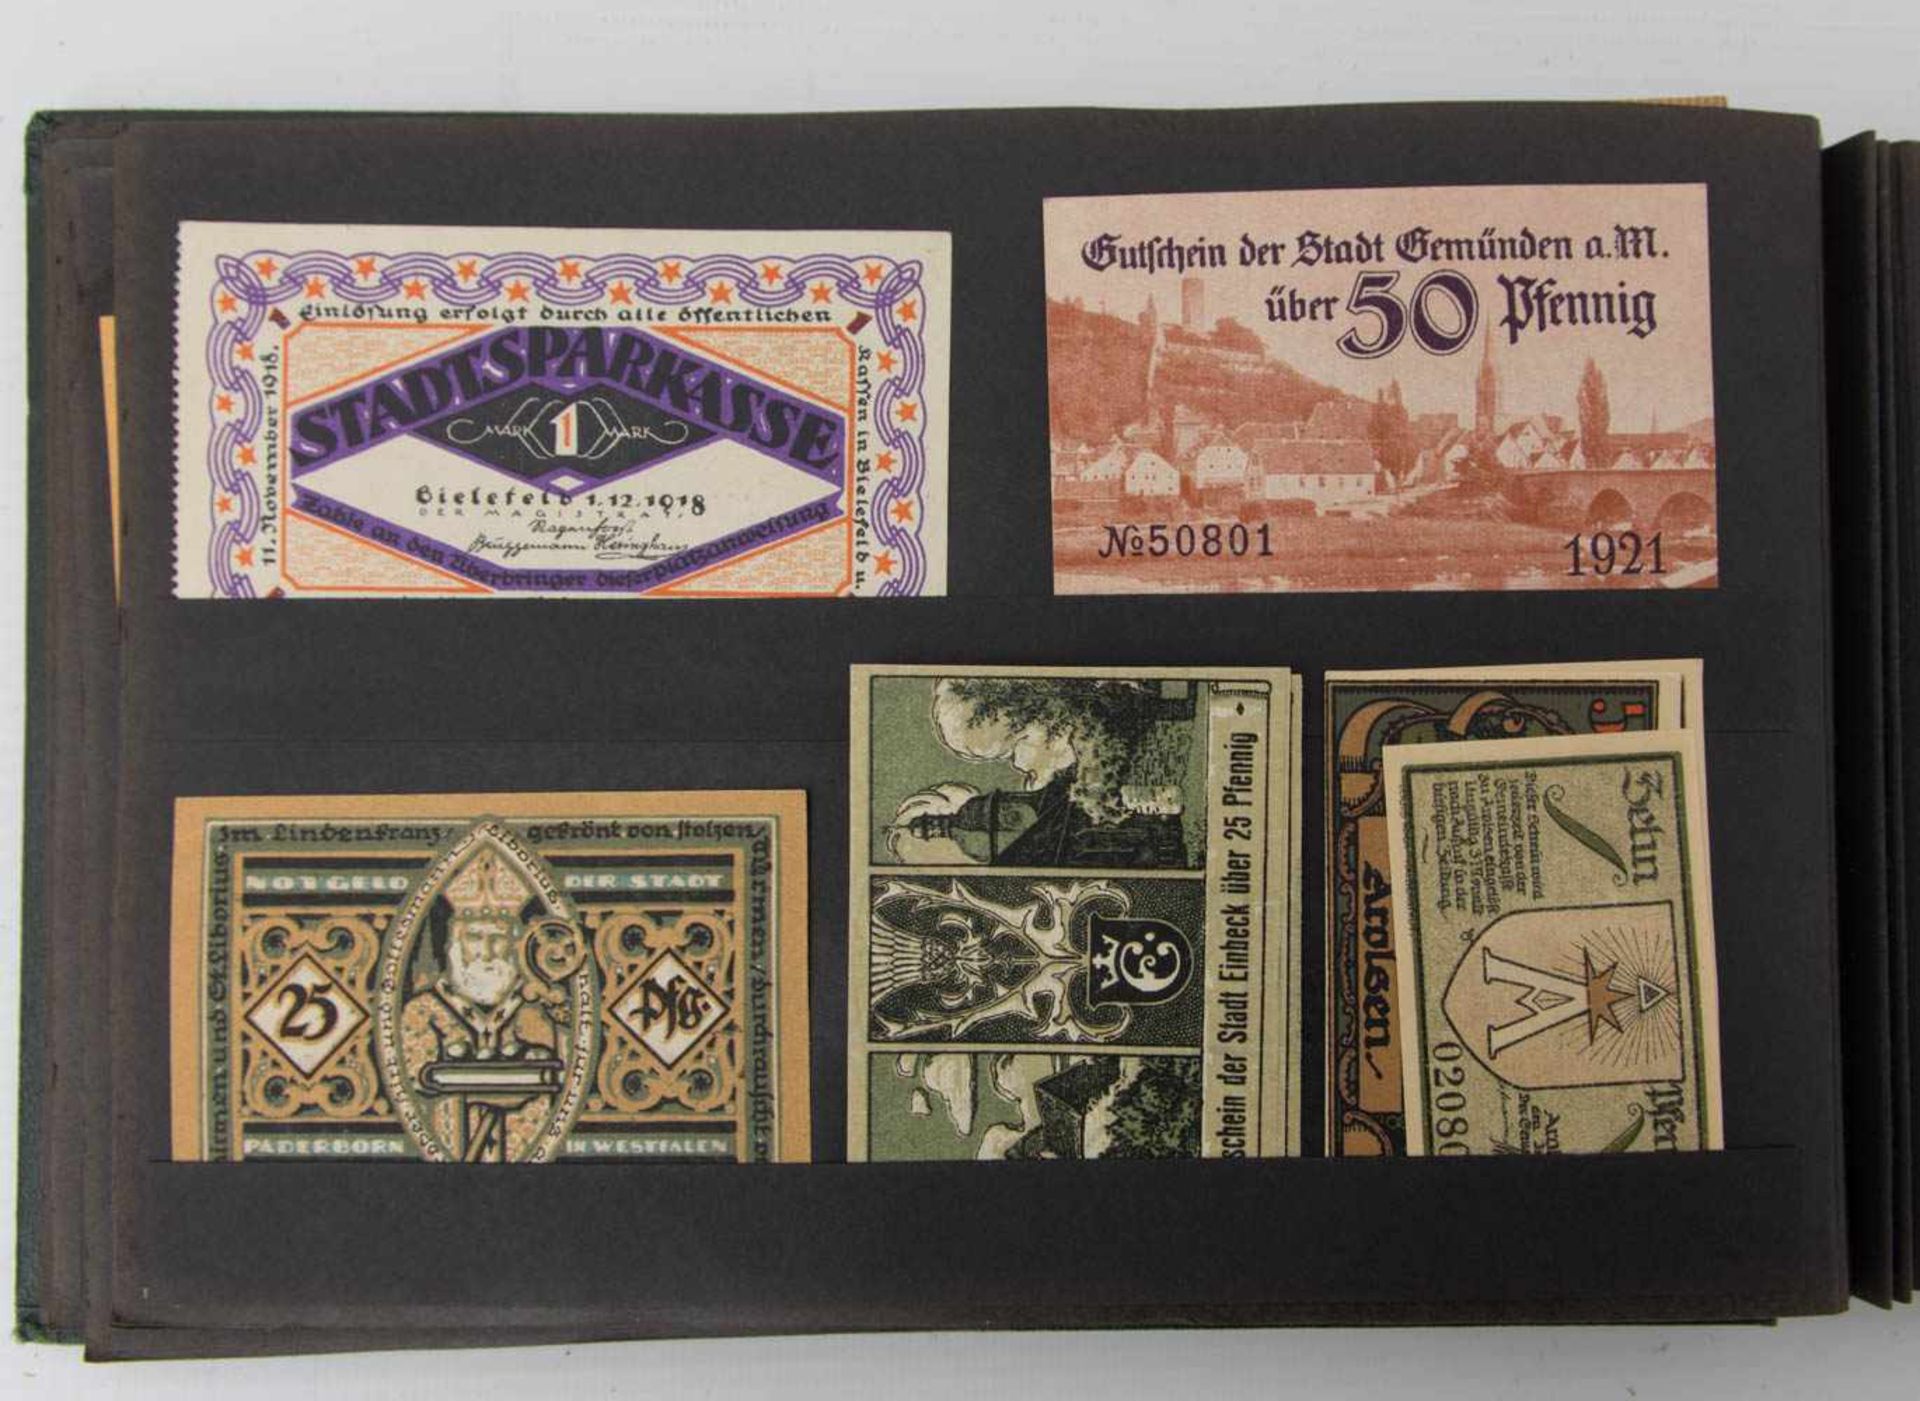 NOTGELD-ALBUM, Notgeld aus verschiedenen deutschen Städten, Anfang 20. Jh.26 x 17 cm